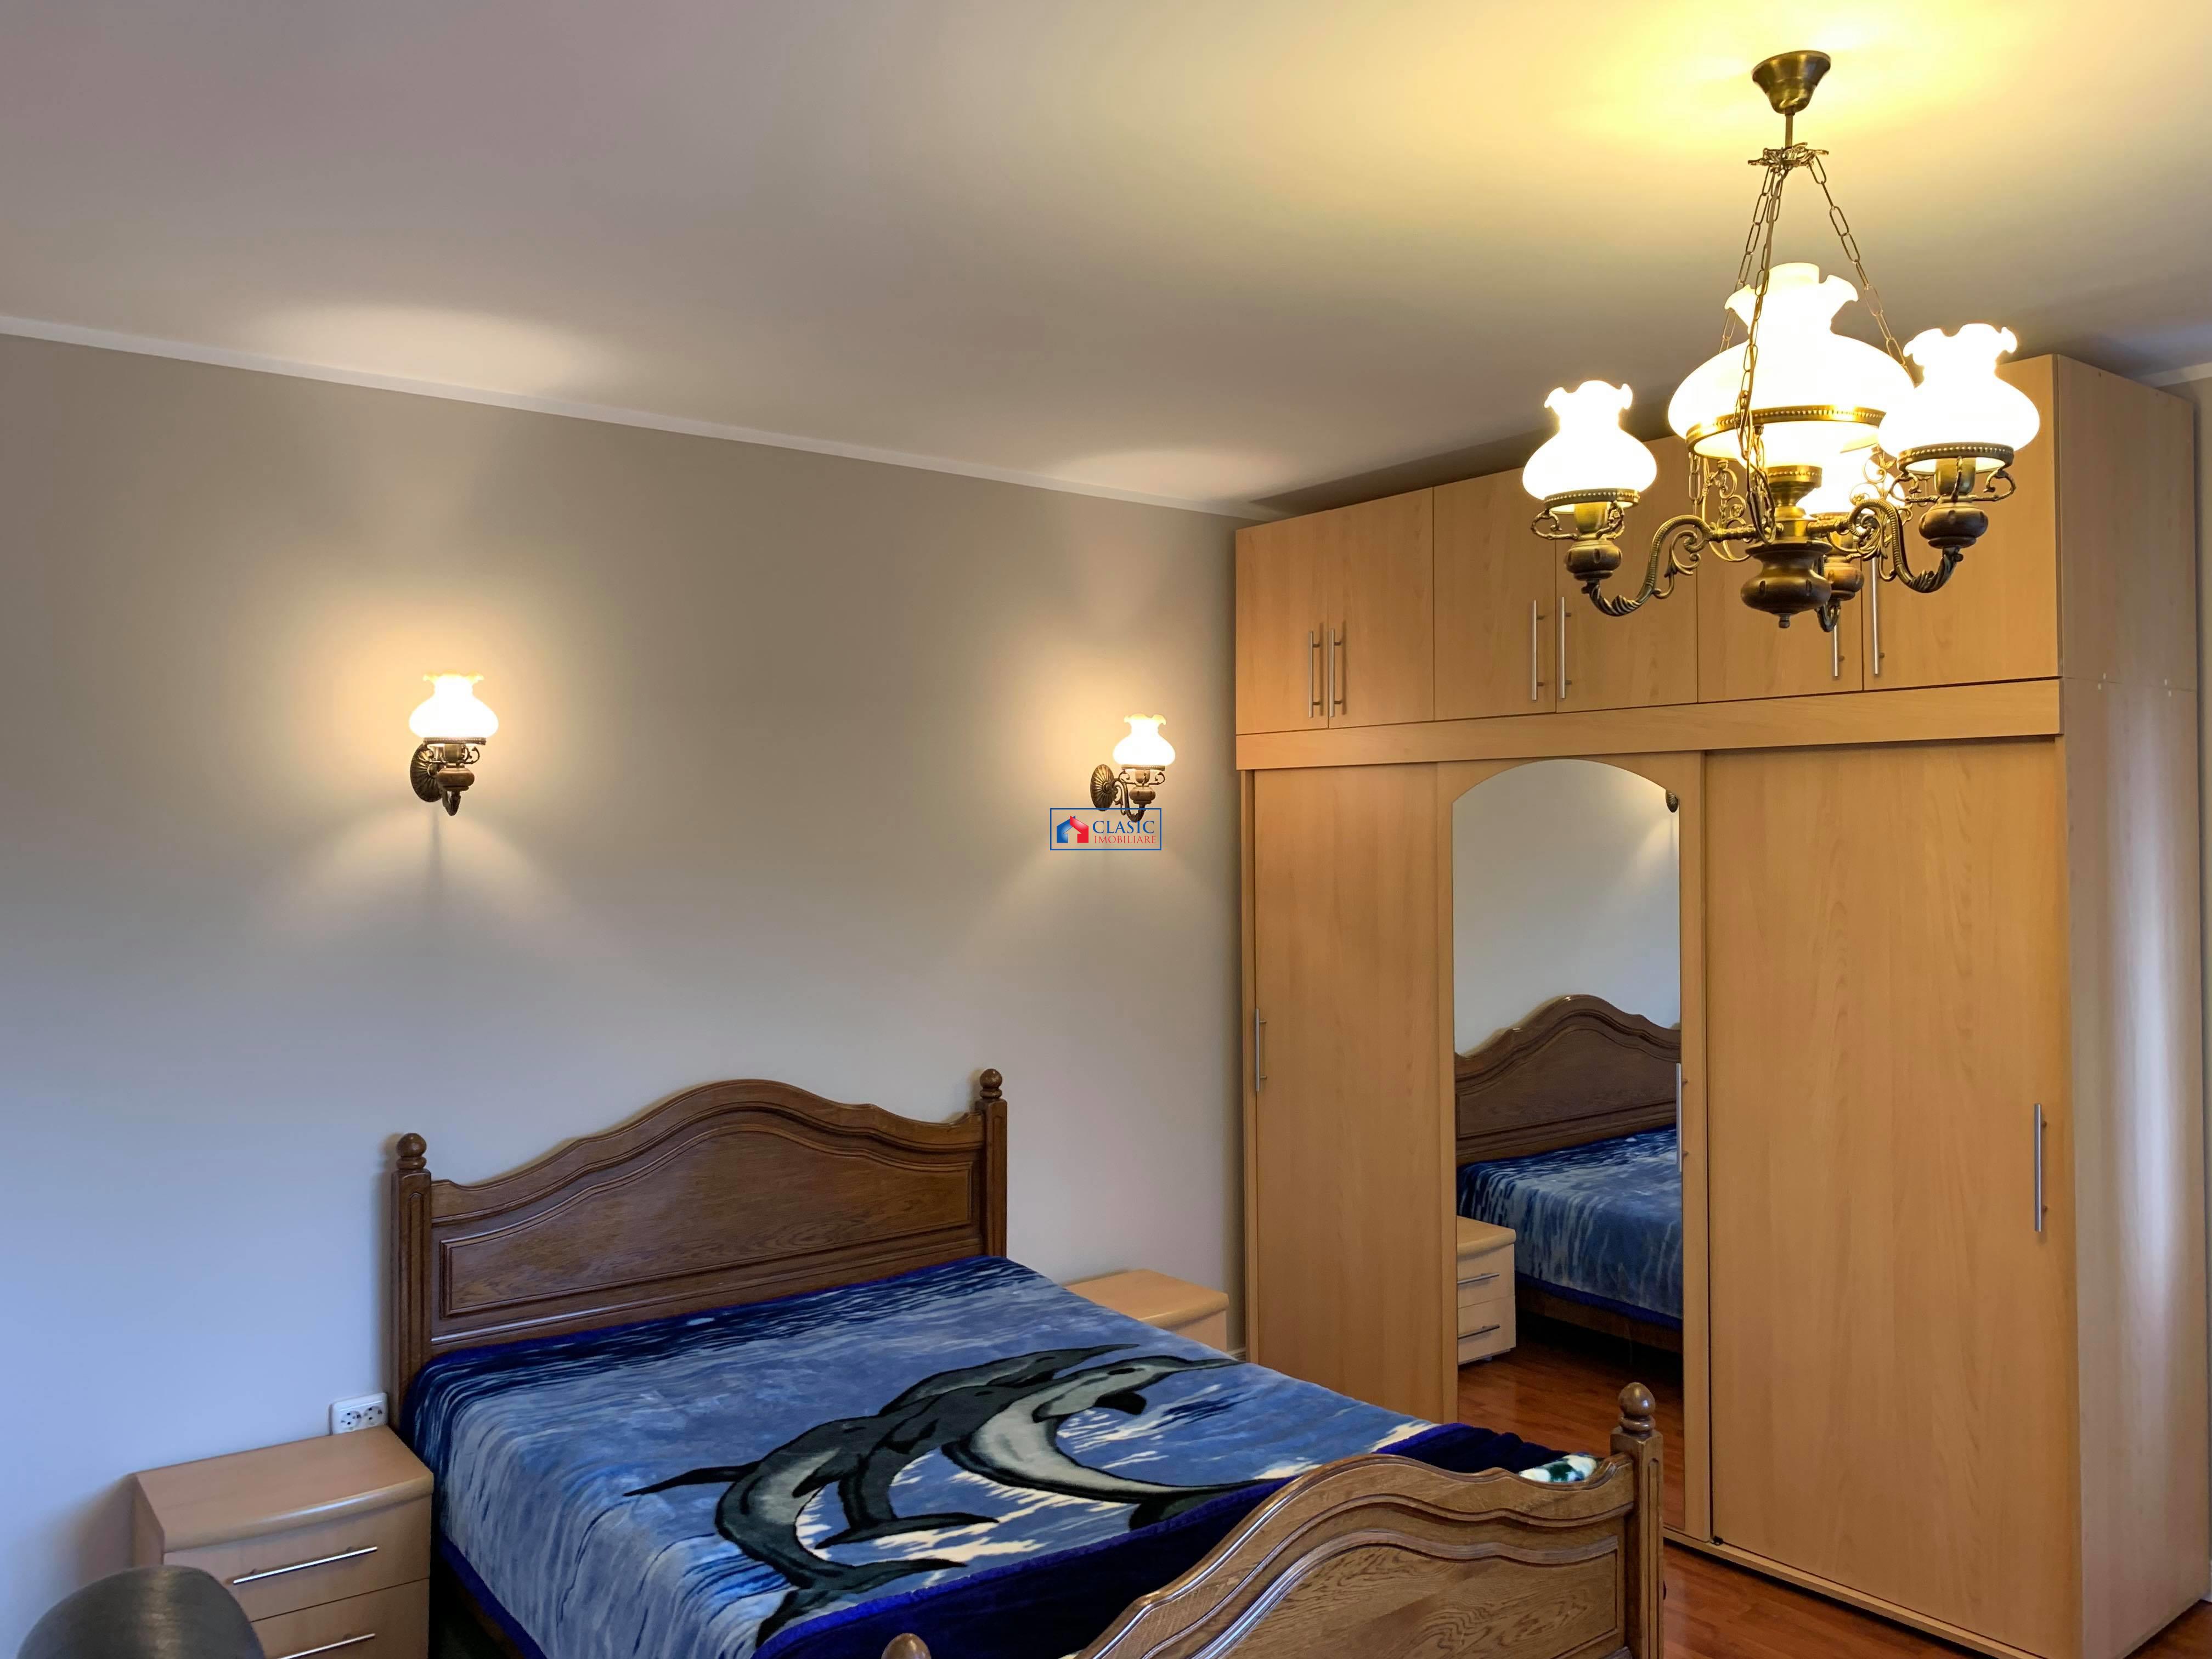 Inchiriere apartament 3 camere modern cu gradina in vila, in Buna Ziua